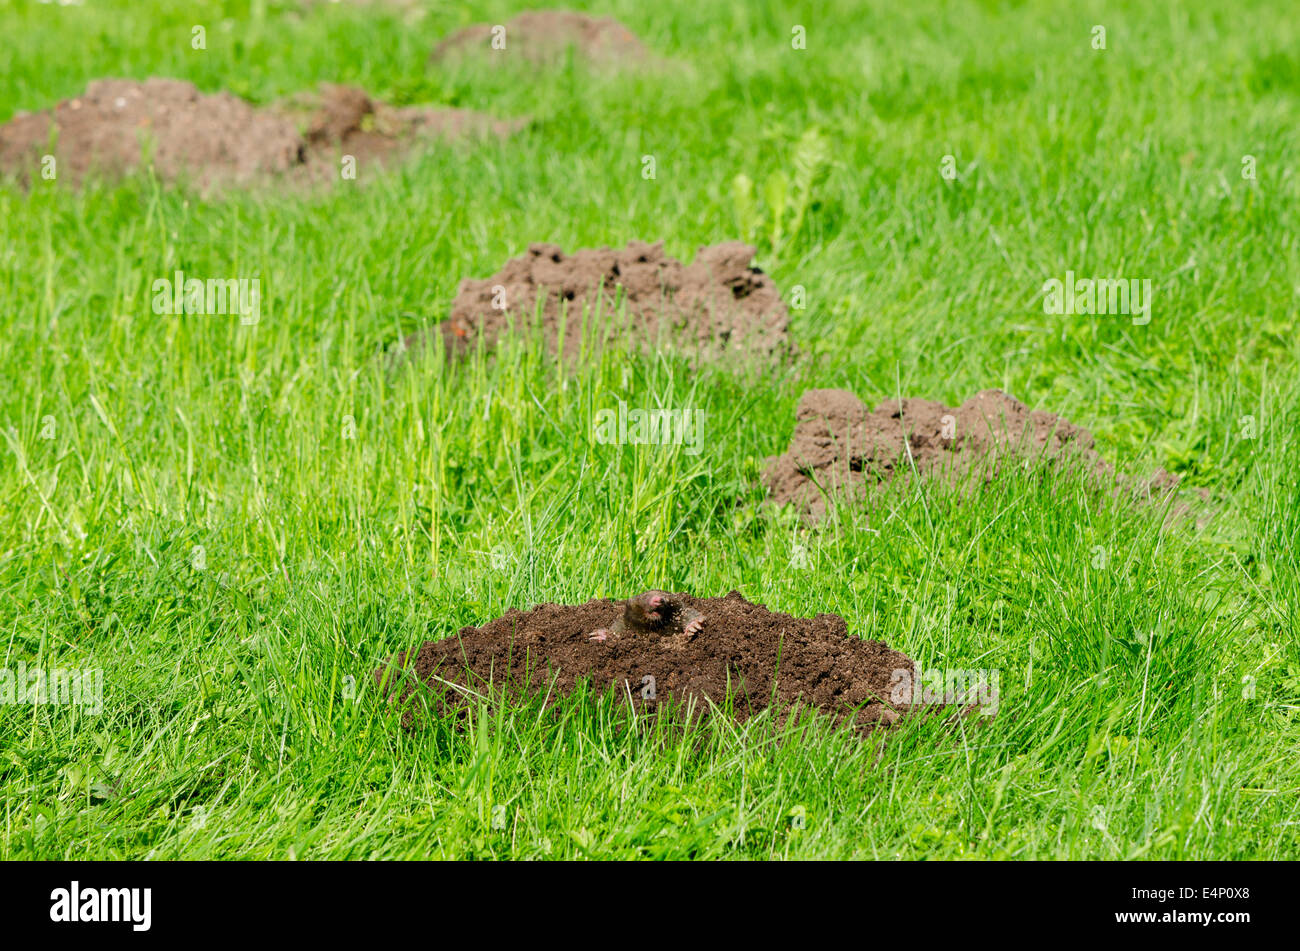 Mole colinas sobre el césped de hierba y cabeza de animal en el suelo. Enemigo para césped hermoso. Foto de stock